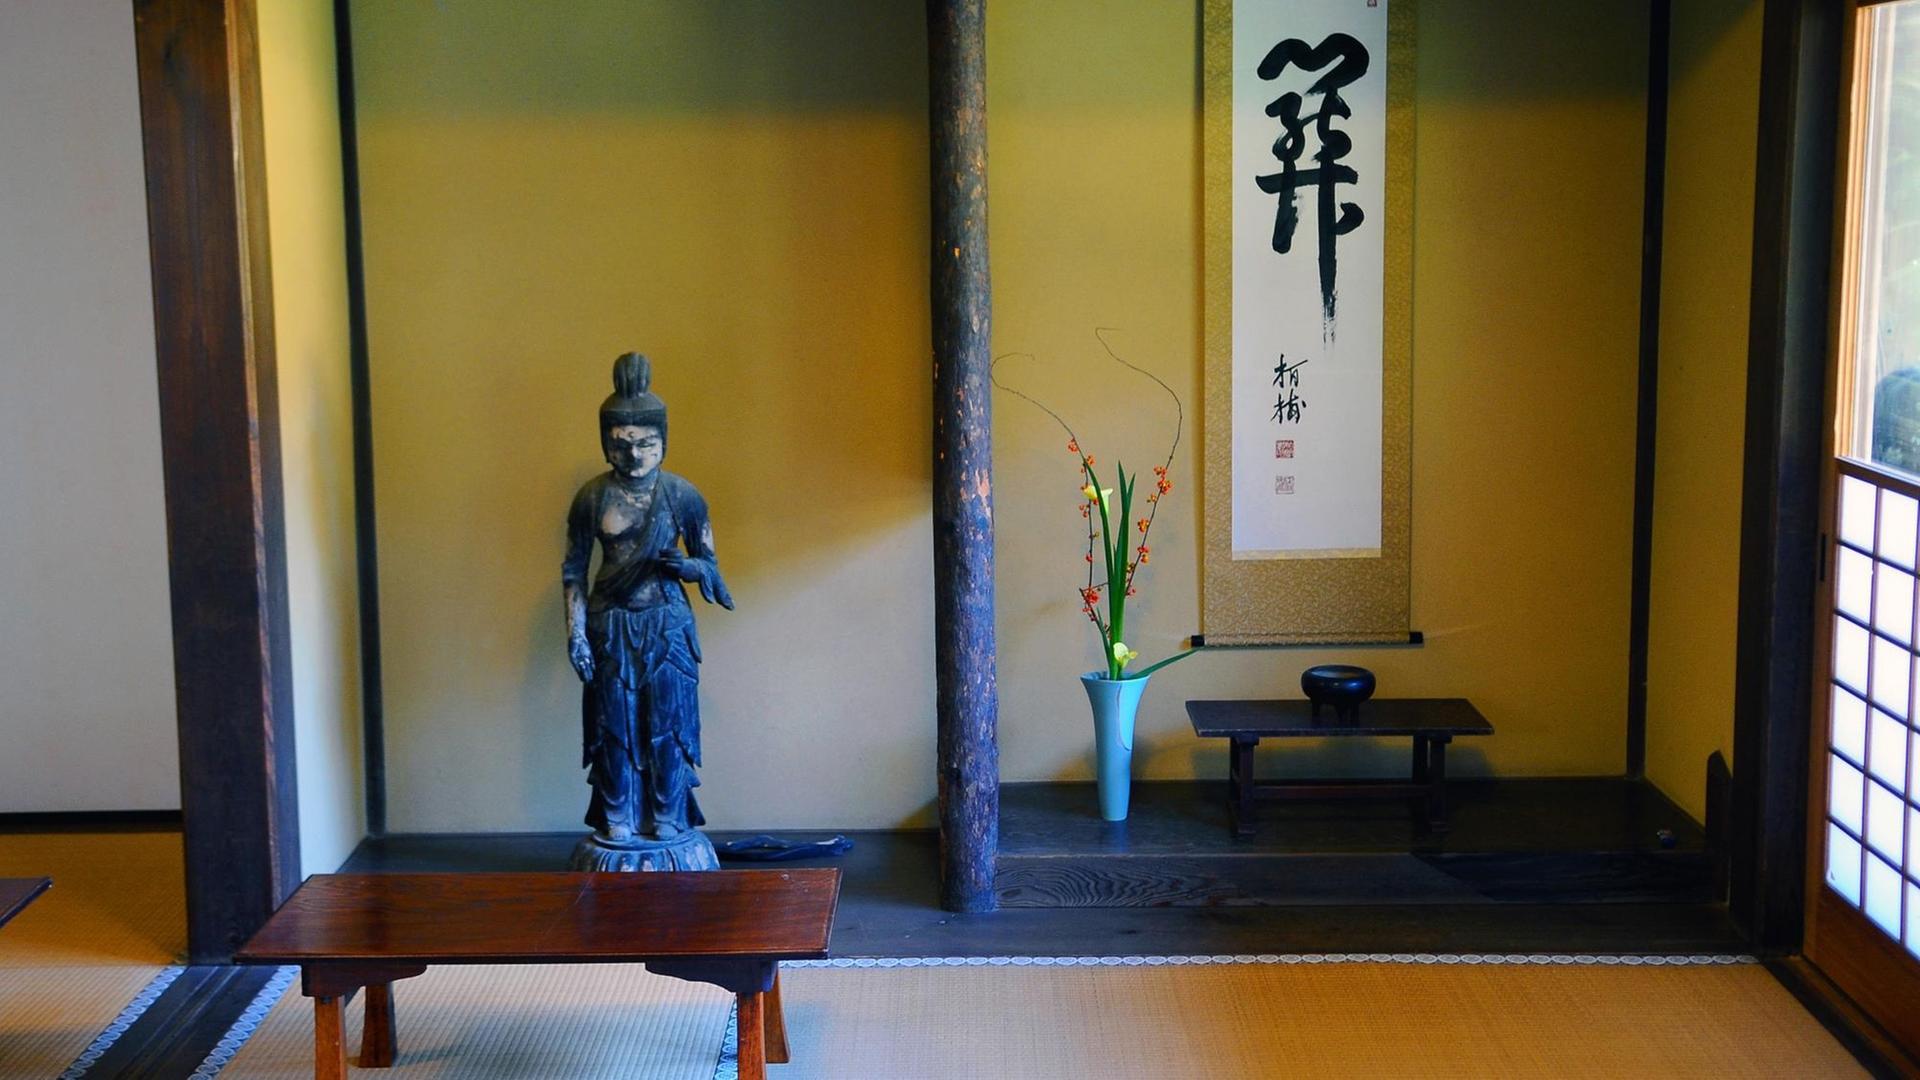 Spartanische Innenraumgestaltung eines Gebäudes im Ryuoden-Garten im Kenchoji-Tempelkomplex, aufgenommen am 28.10.2011. Die Stadt Kamakura, an der Sagami-Bucht gelegen, gilt als das "kleine Kyoto", sie war von 1192 bis 1333 faktische Hauptstadt Japans. In ihr erlebte der Zen-Buddhismus seine erste Blüte, was sich auch in der schlichten und asketischen Schrein- Tempeln-Architektur aus jener Zeit niederschlug.